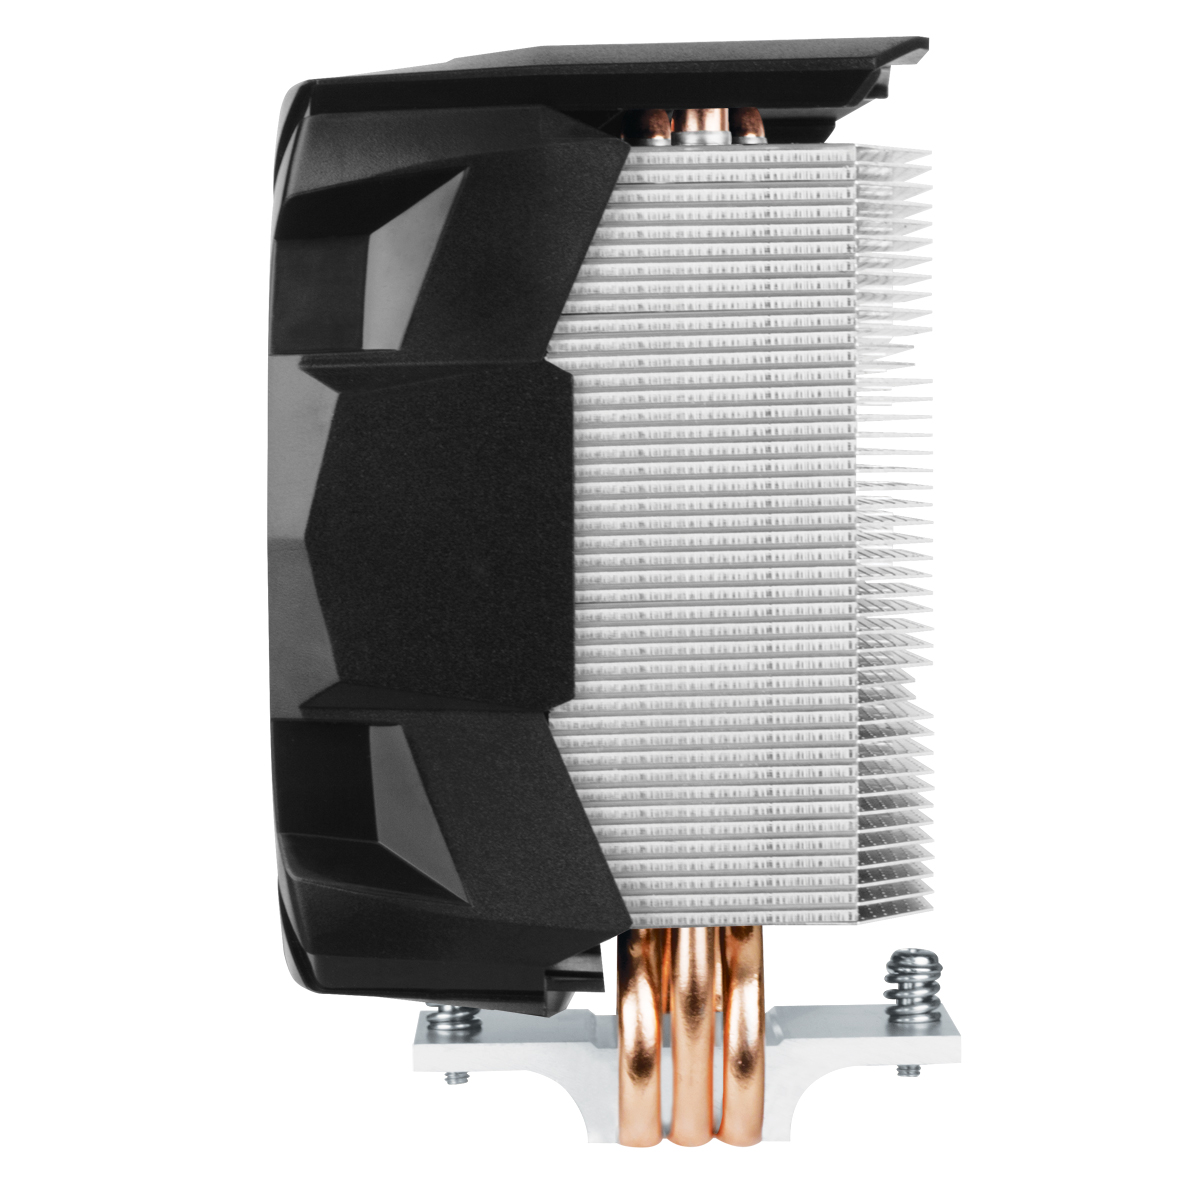 Roulement Dynamique Fluide Pâte Thermique MX-2 pré-appliquée Refroidisseur de processeur Compact Intel 100 mm Noir ARCTIC Freezer i13 X contrôlé par PWM 300-2000 RPM 